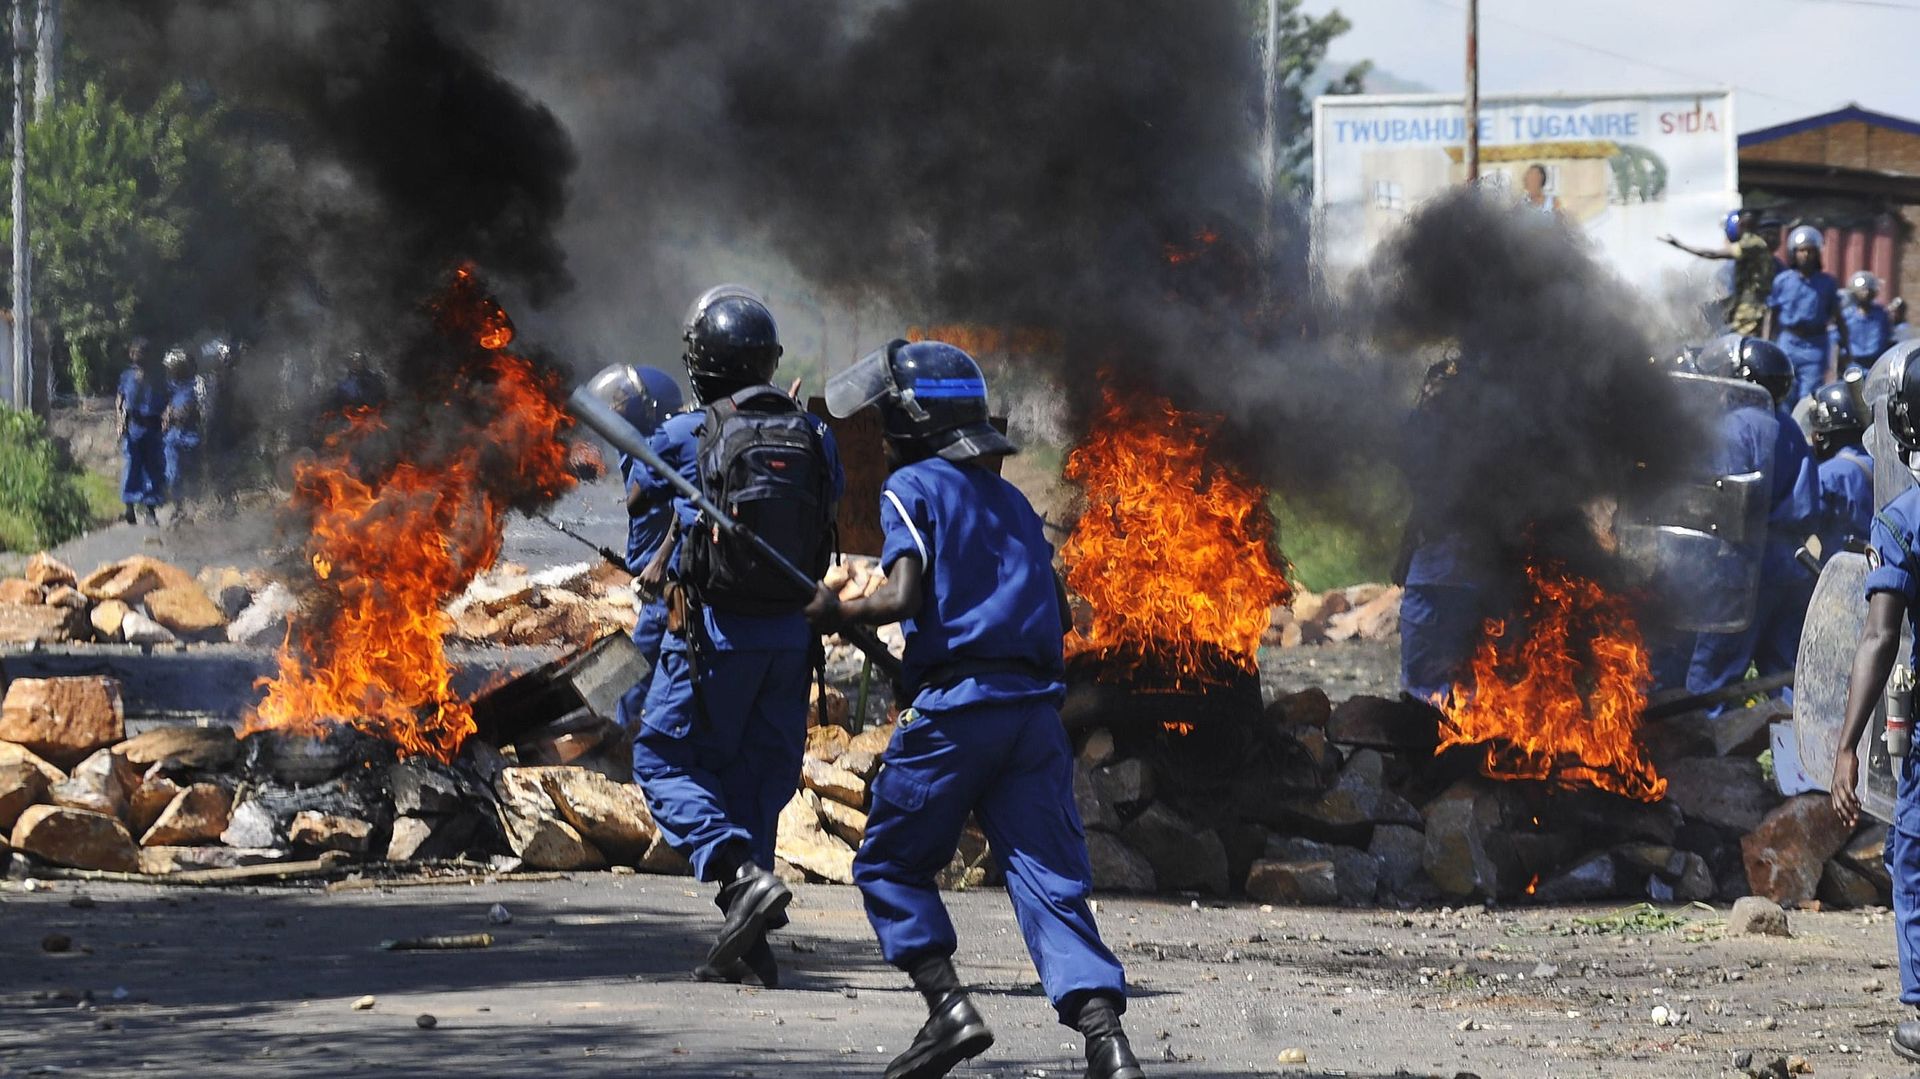 Les forces de police font face aux manifestants "anti-troisième-mandat" depuis plusieurs jours. Ces affrontements auraient fait au moins cinq morts depuis le 26 avril.